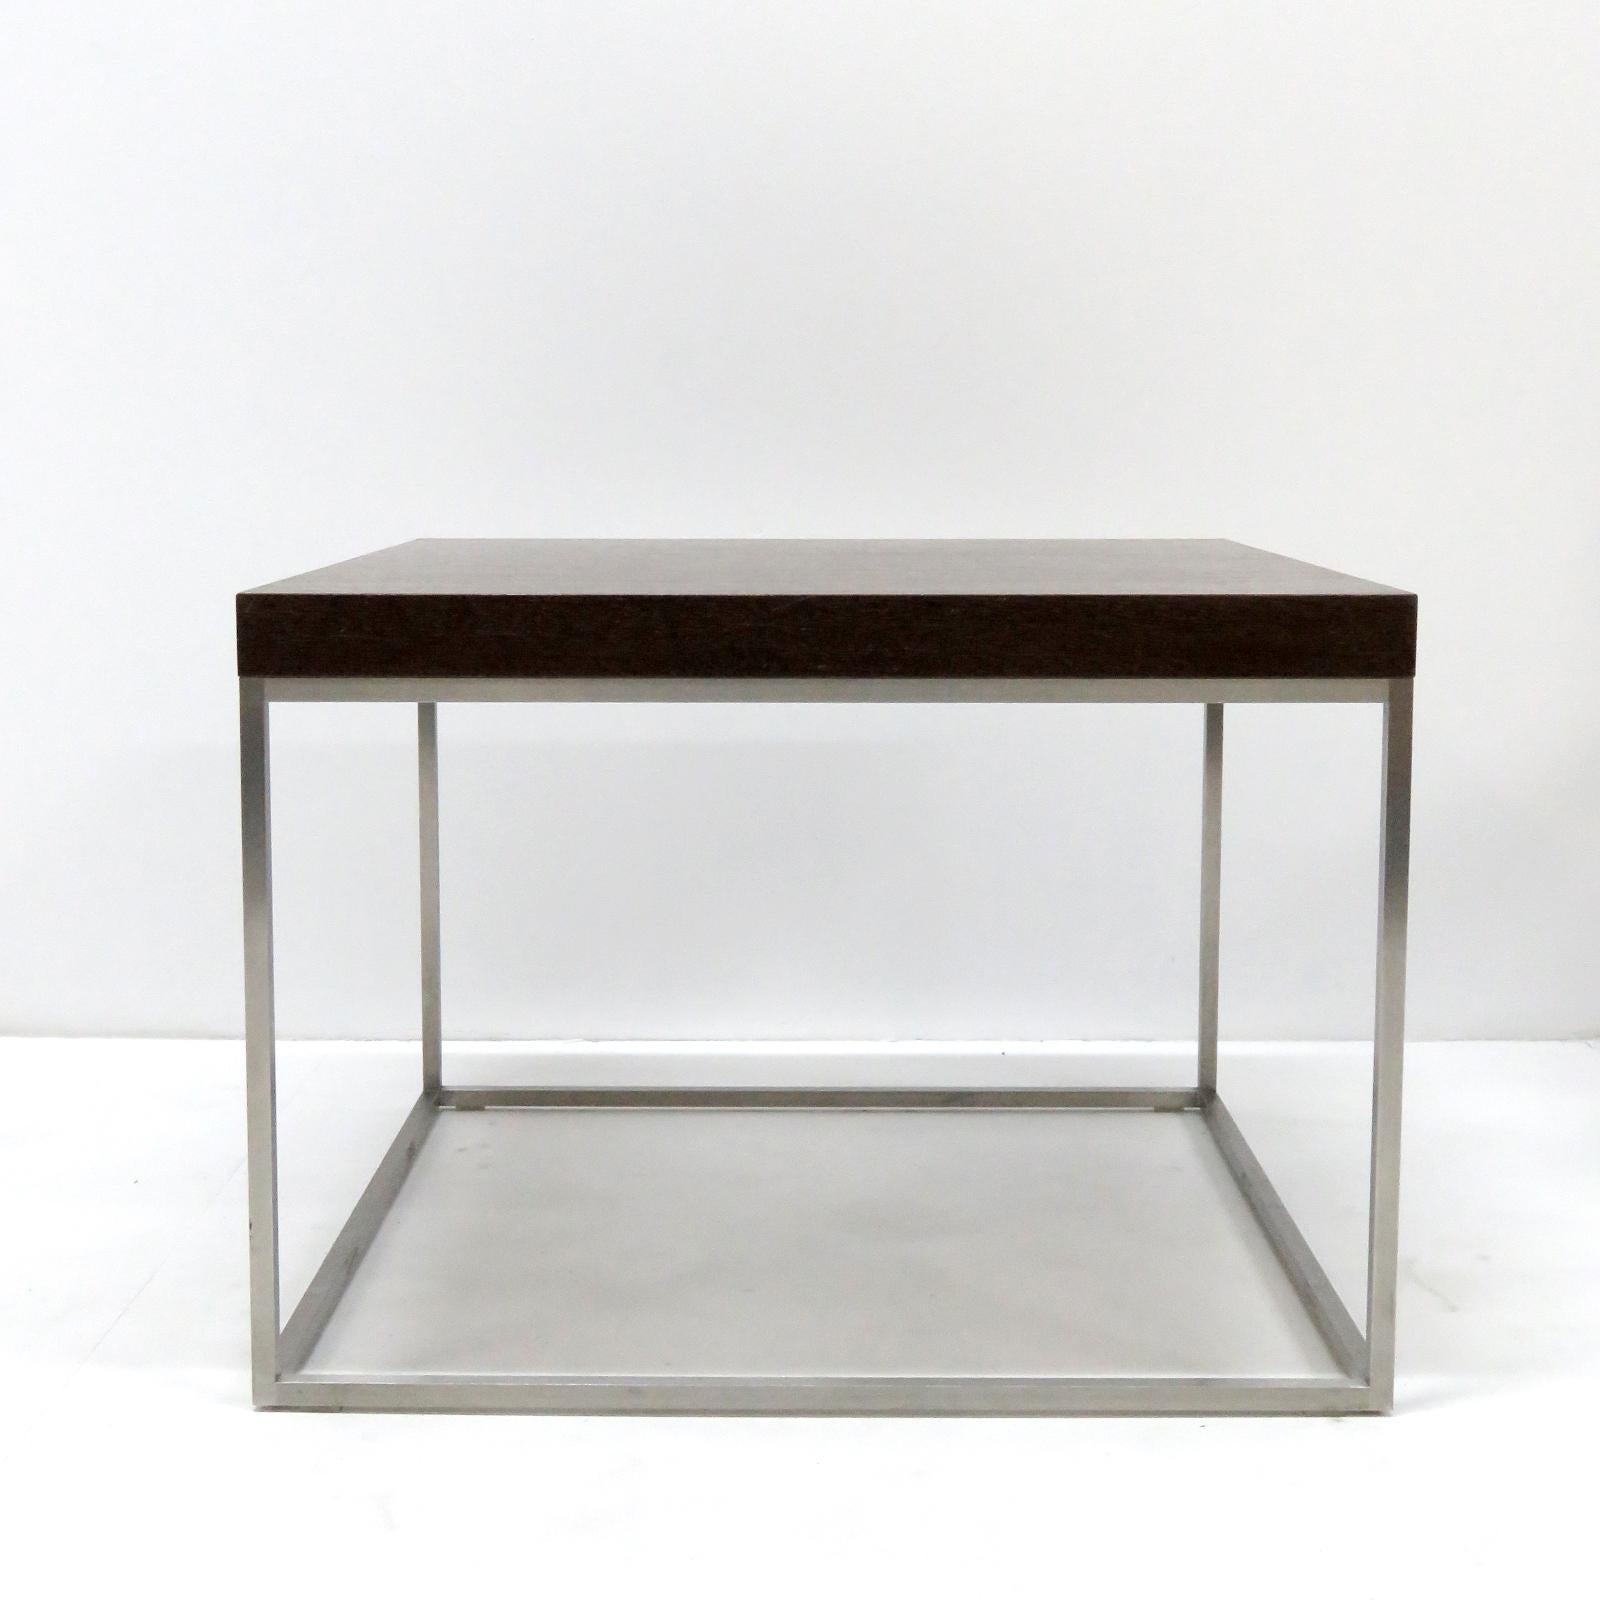 Magnifique table basse moderne de Paolo Piva pour Wittmann, Autriche, en placage de wengé foncé sur une structure en acier inoxydable cubique clair, marquée.